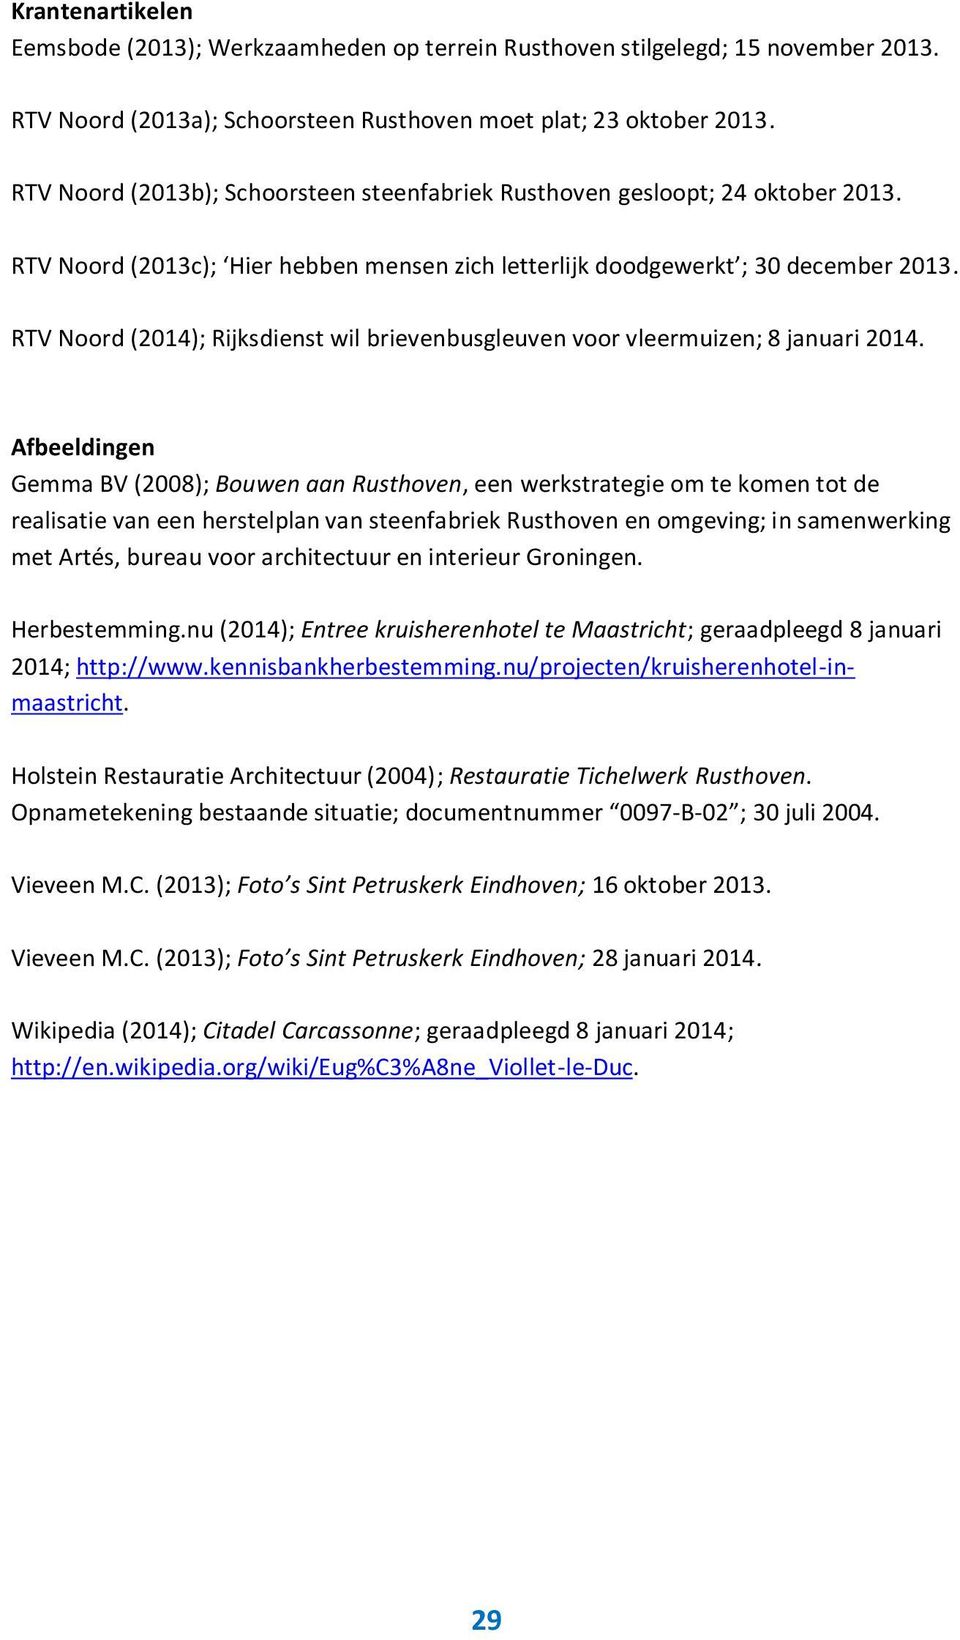 RTV Noord (2014); Rijksdienst wil brievenbusgleuven voor vleermuizen; 8 januari 2014.